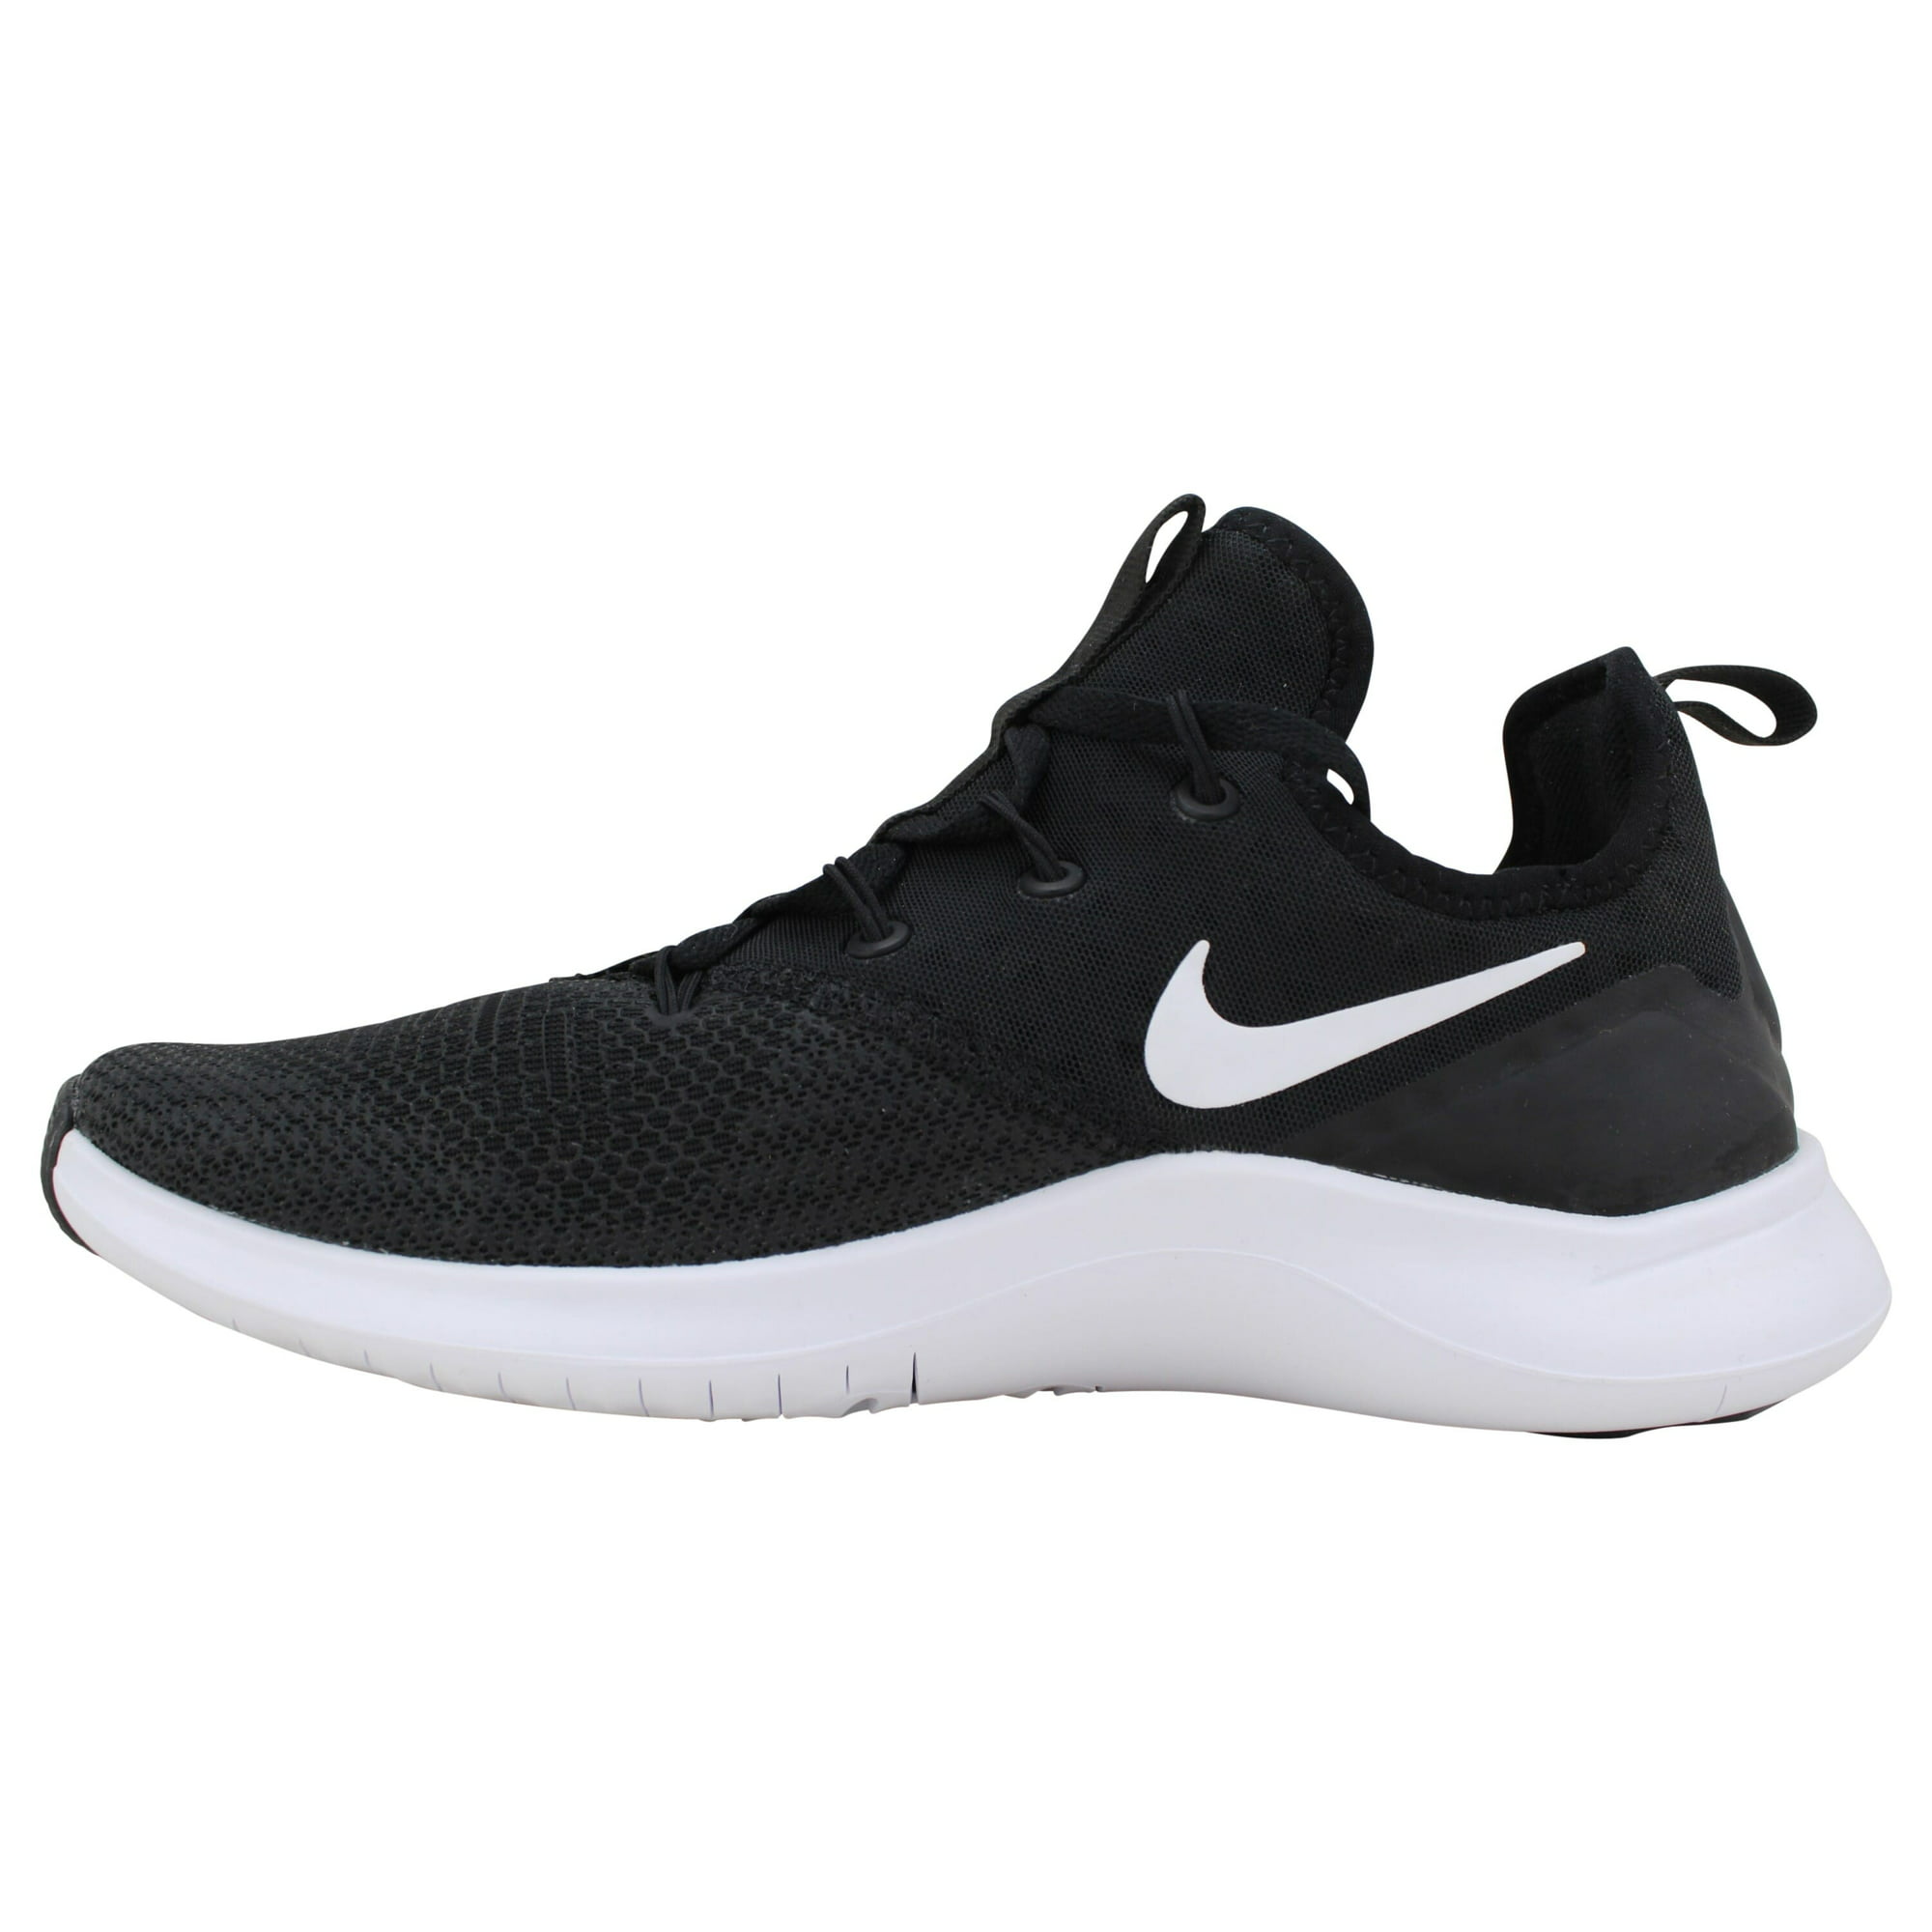 NIKE Free TR 8 Running Shoes Black/White B(M) US | Walmart Canada